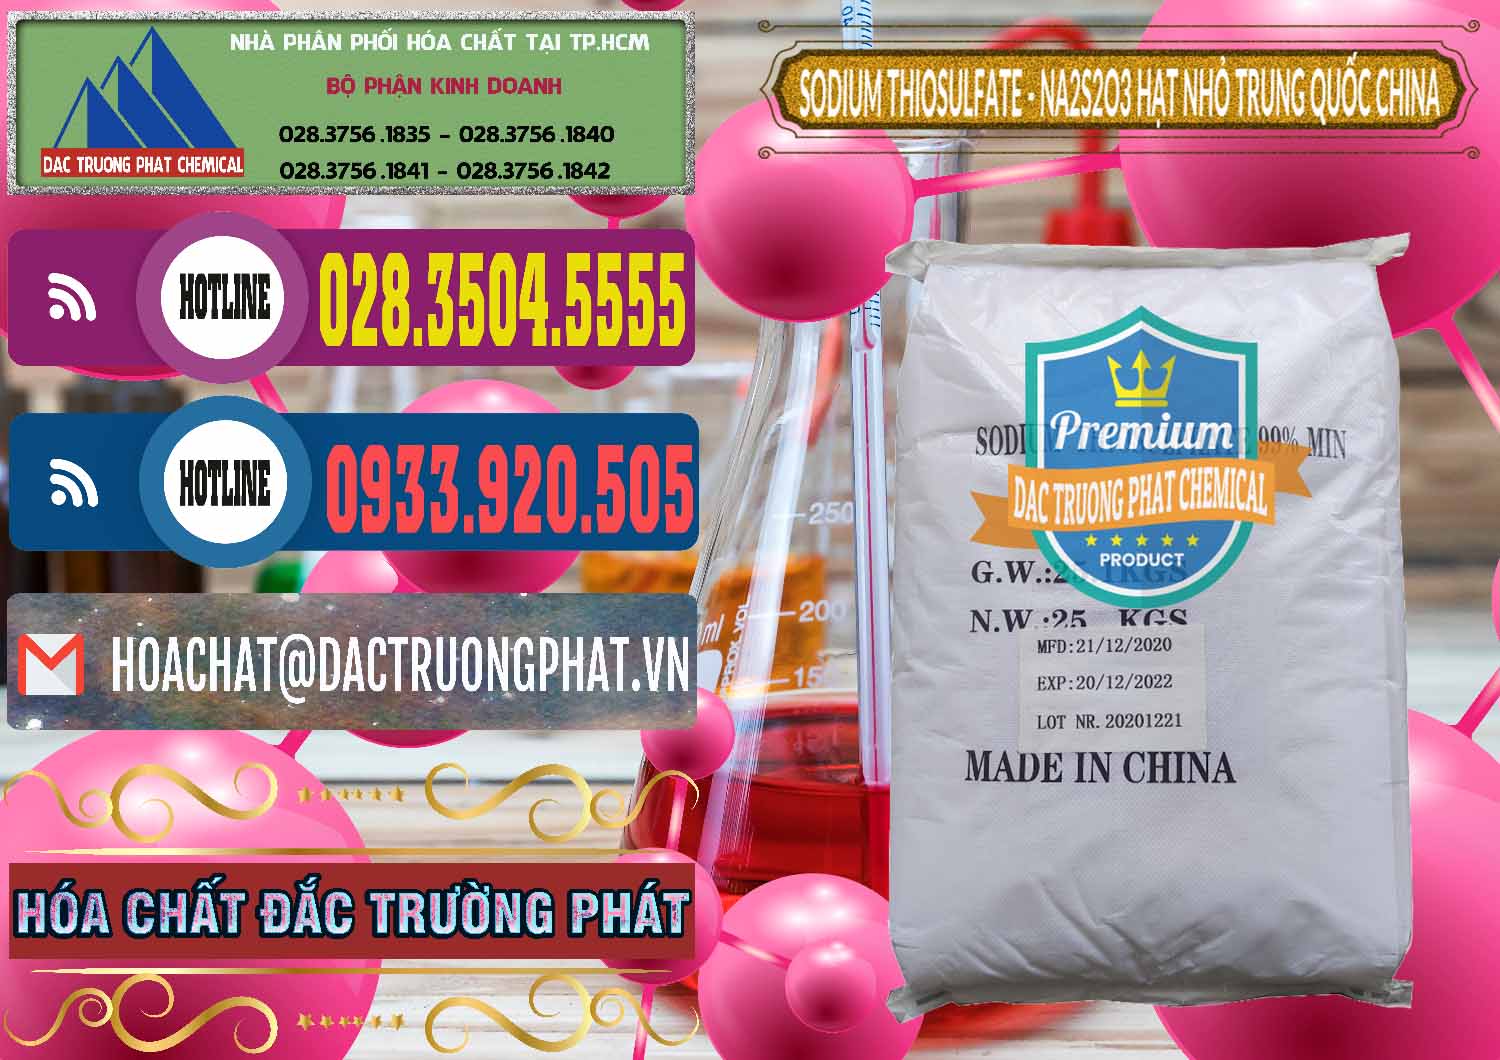 Nhà nhập khẩu - bán Sodium Thiosulfate - NA2S2O3 Hạt Nhỏ Trung Quốc China - 0204 - Đơn vị chuyên kinh doanh và phân phối hóa chất tại TP.HCM - muabanhoachat.com.vn